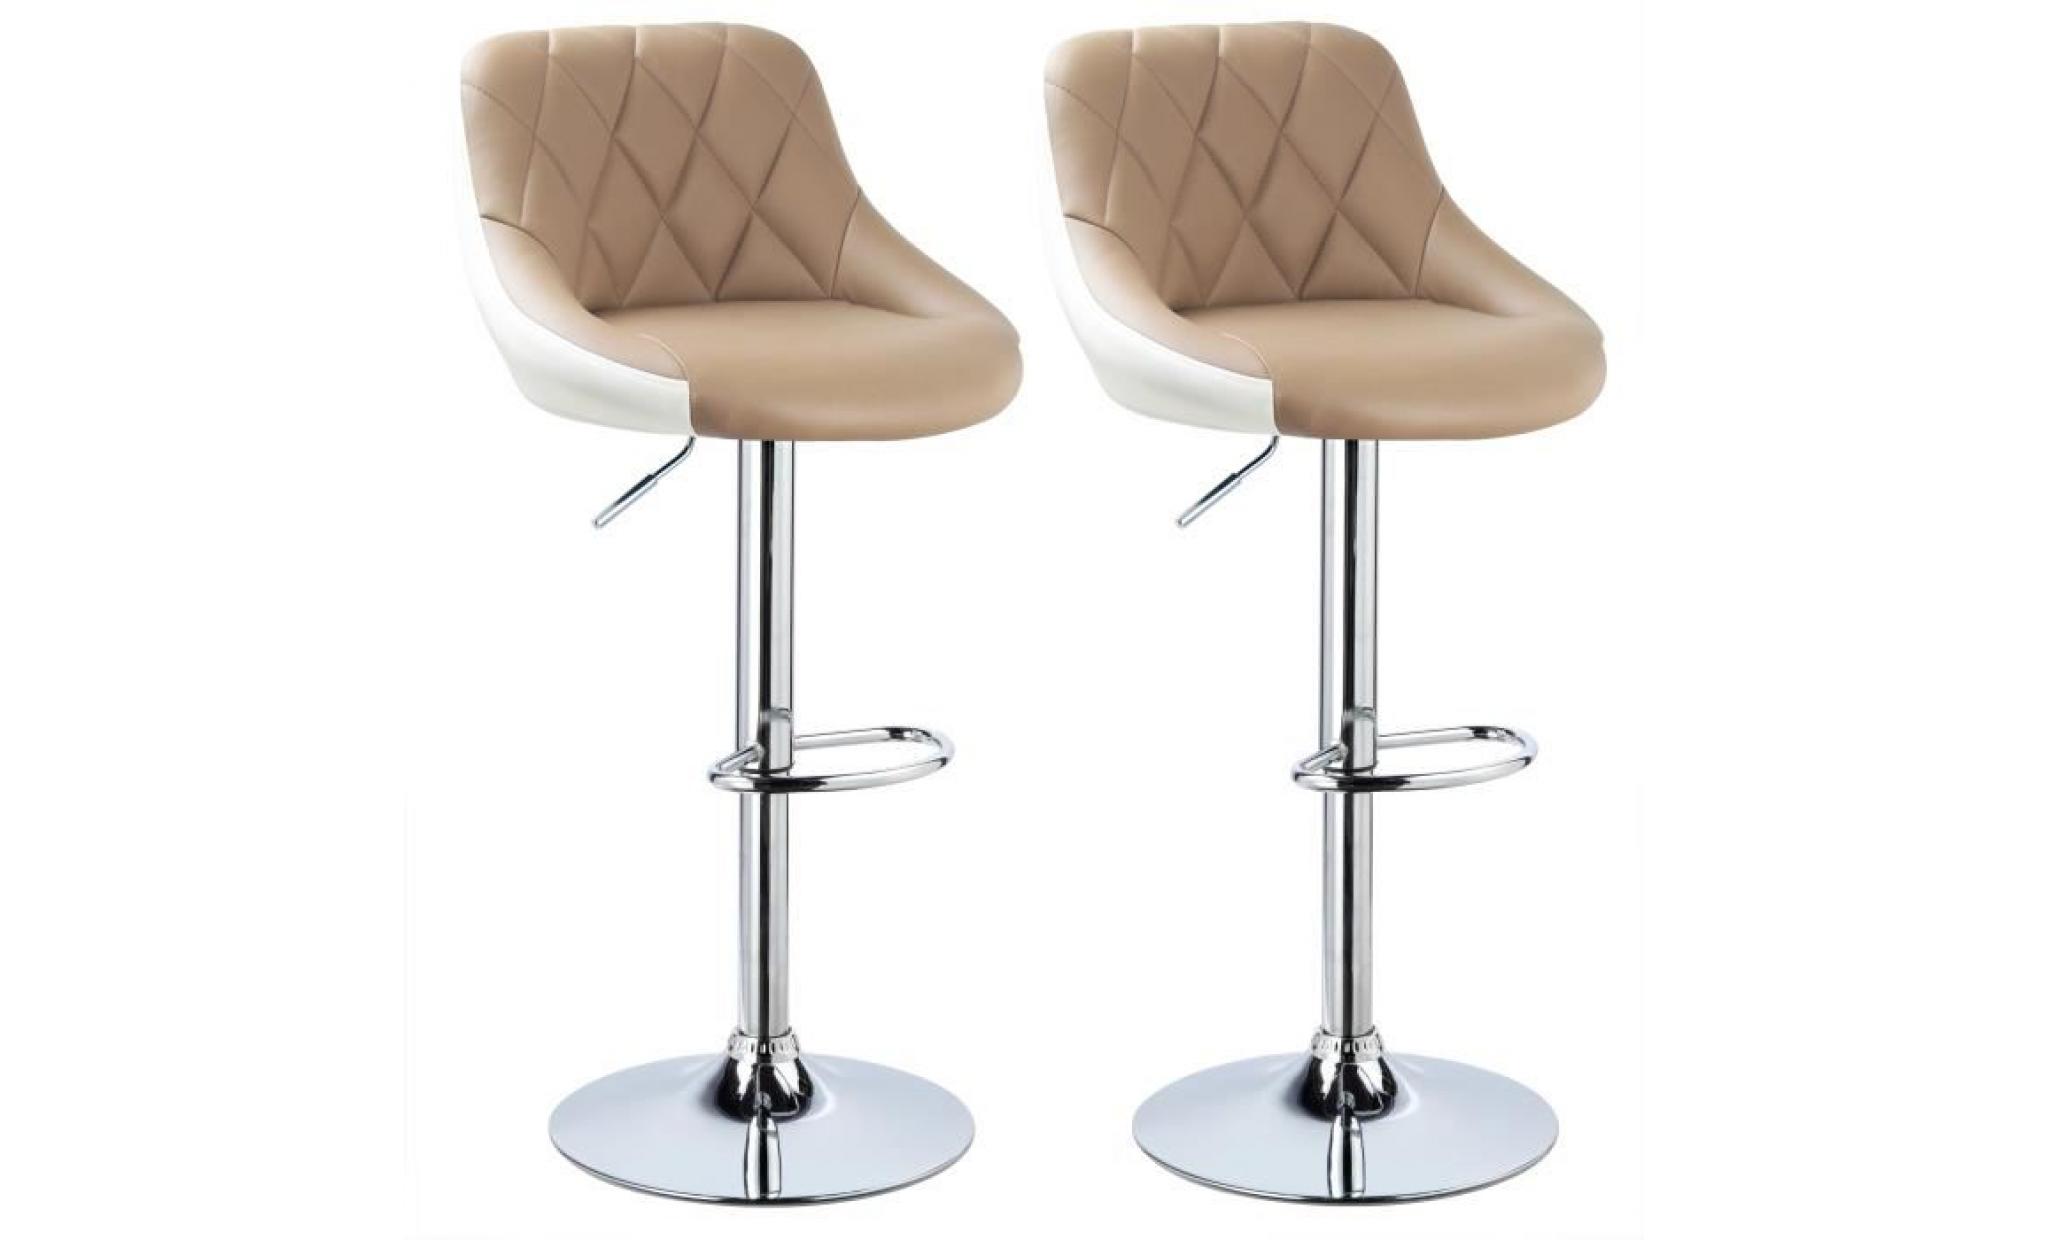 woltu 2 x tabouret de bar en cuir artificiel, design 2 couleurs, siège bien rembourré, kaki blanc